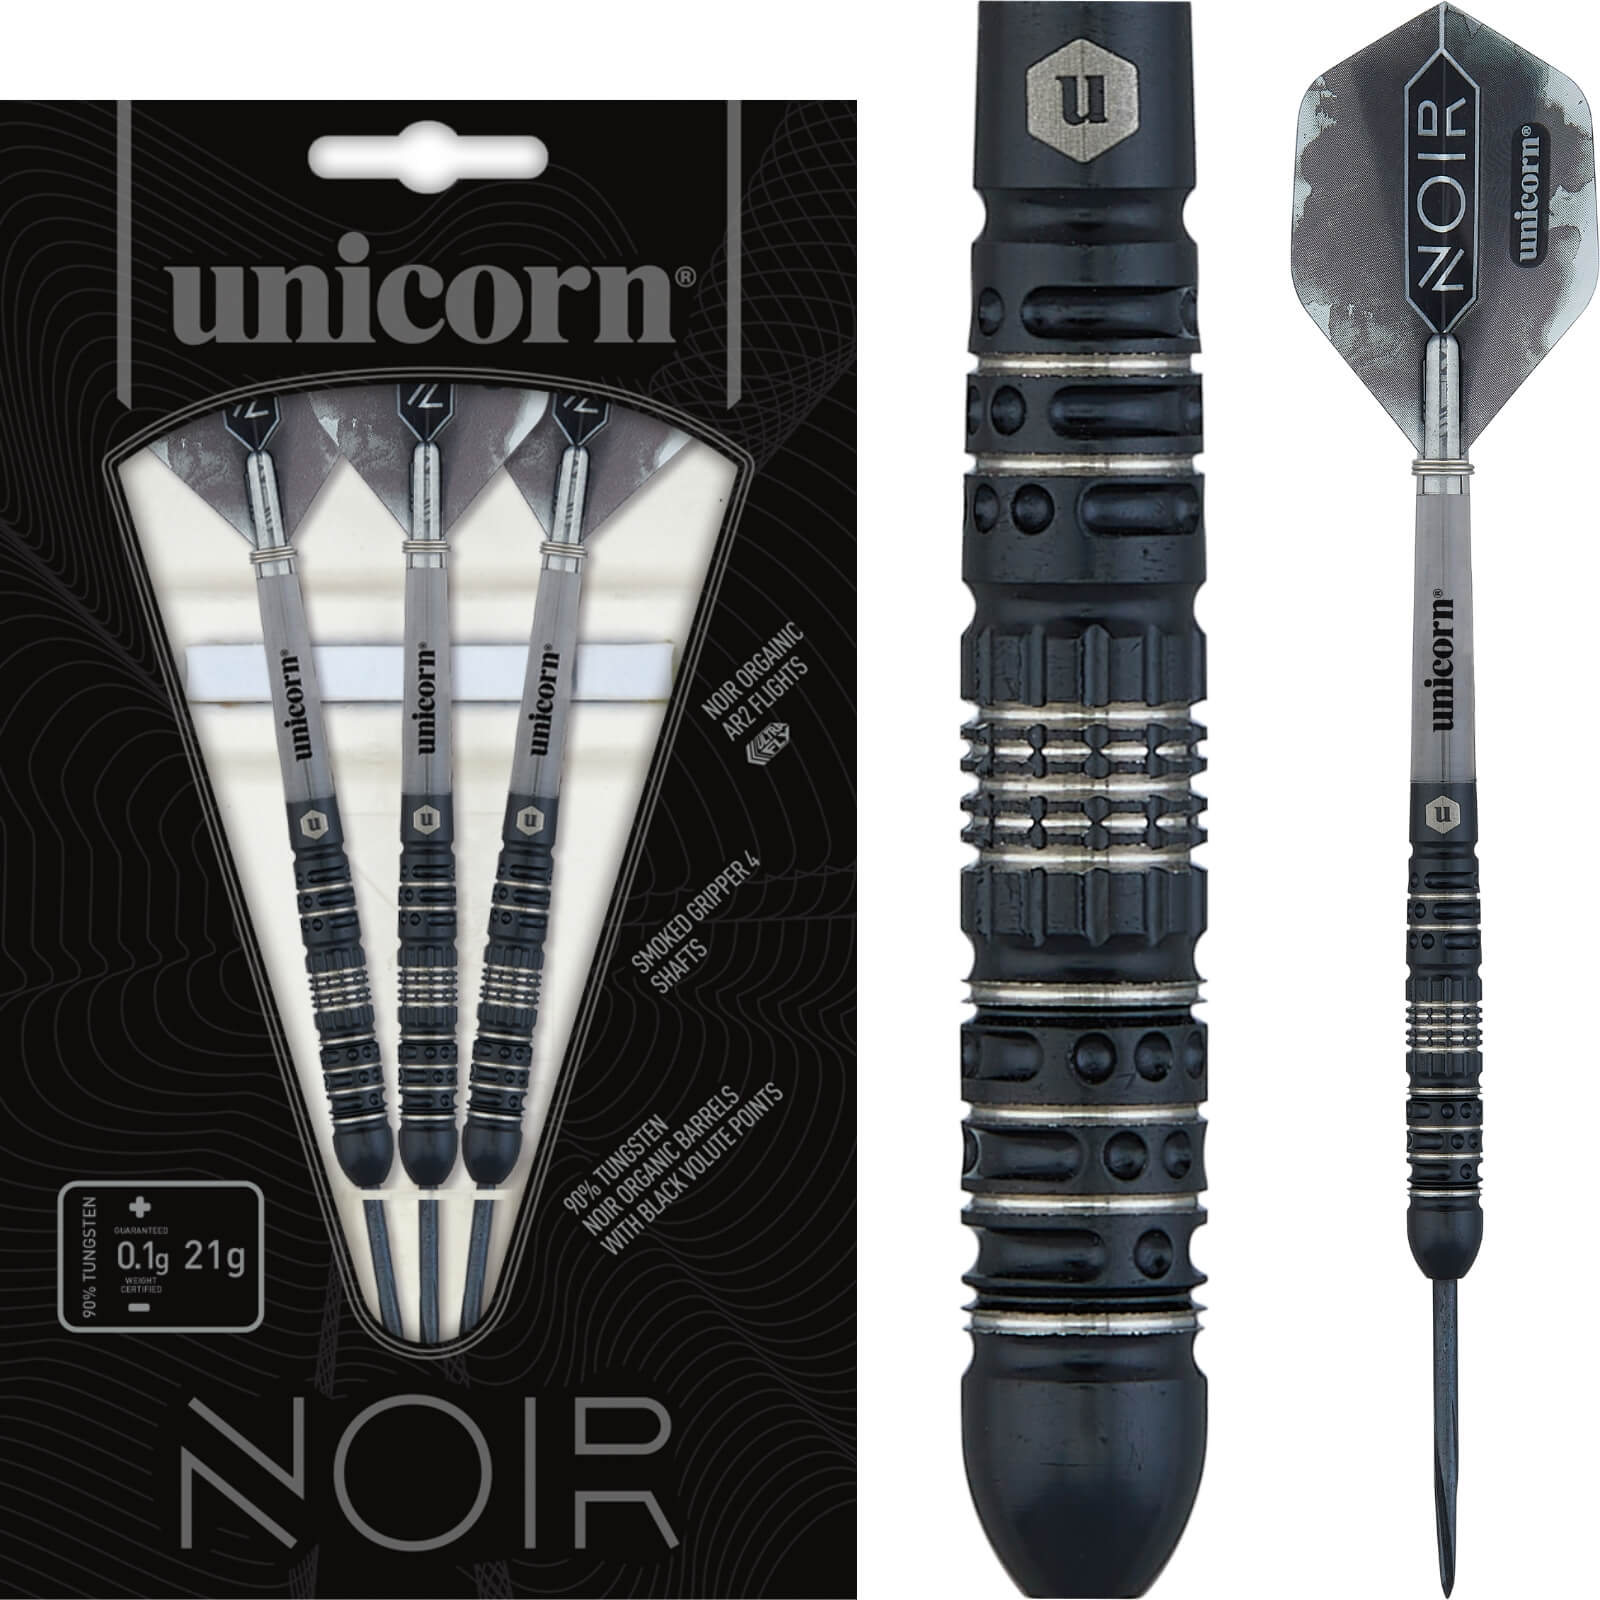 Darts - Unicorn - Noir Style 4 Darts - Steel Tip - 90% Tungsten - 21g 23g 25g 